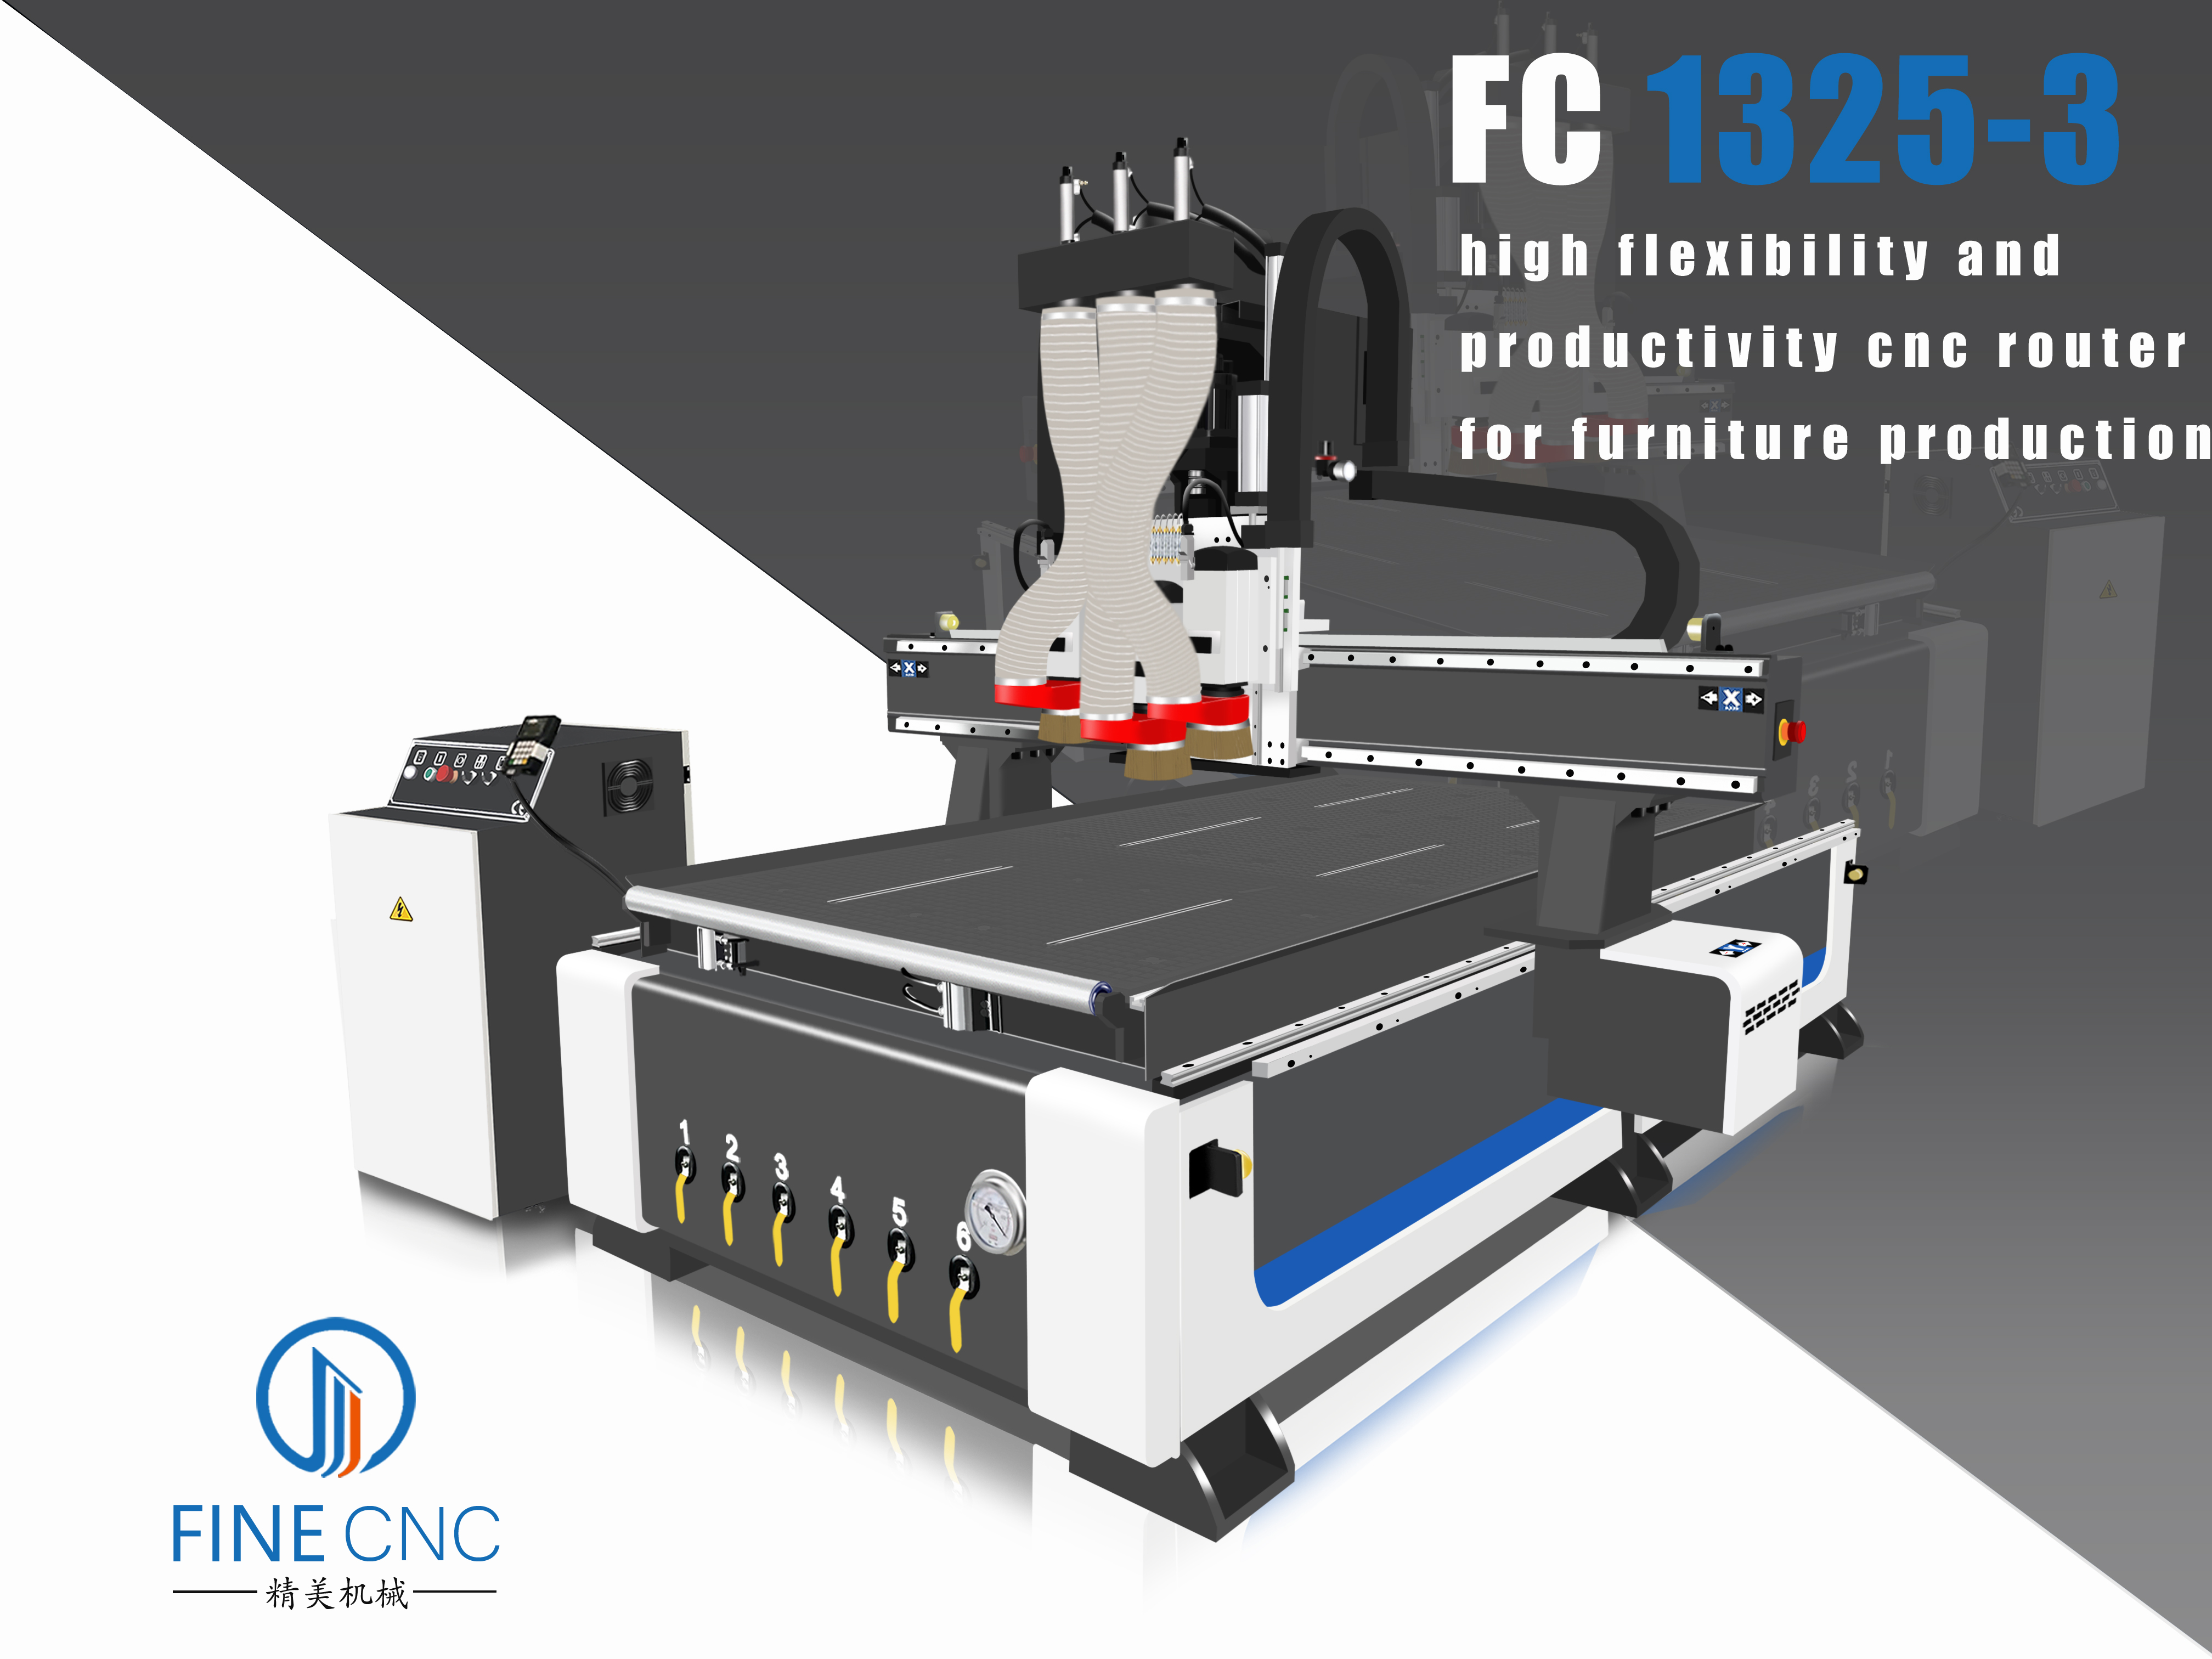 FC1325-3 CNC Router